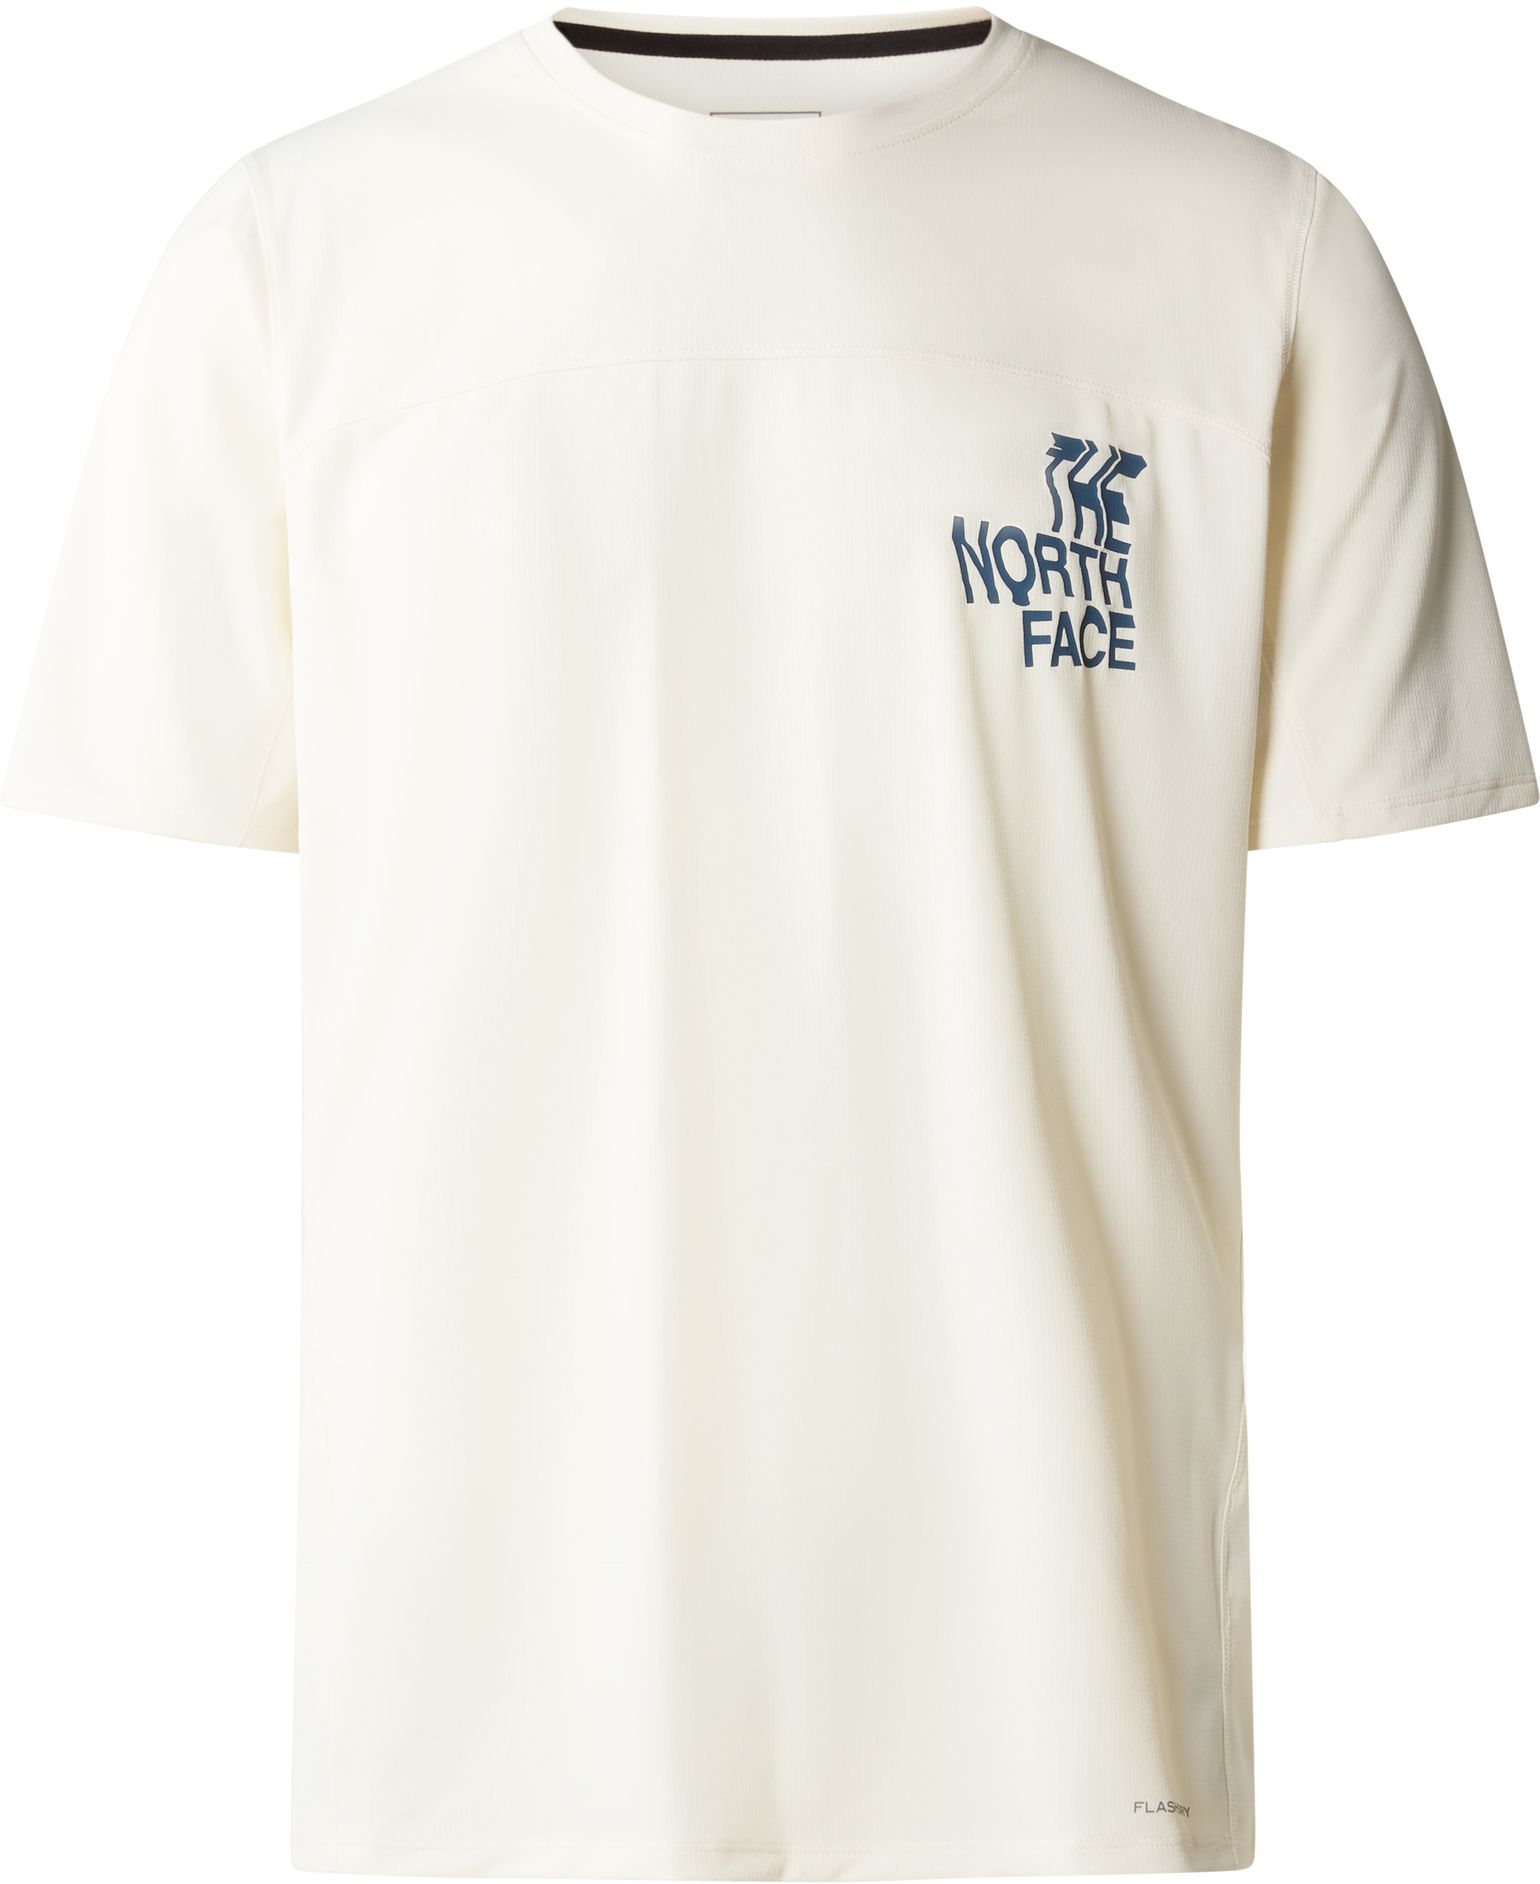 The North Face Men's Sunriser Short Sleeve White Dune/Shady Blue